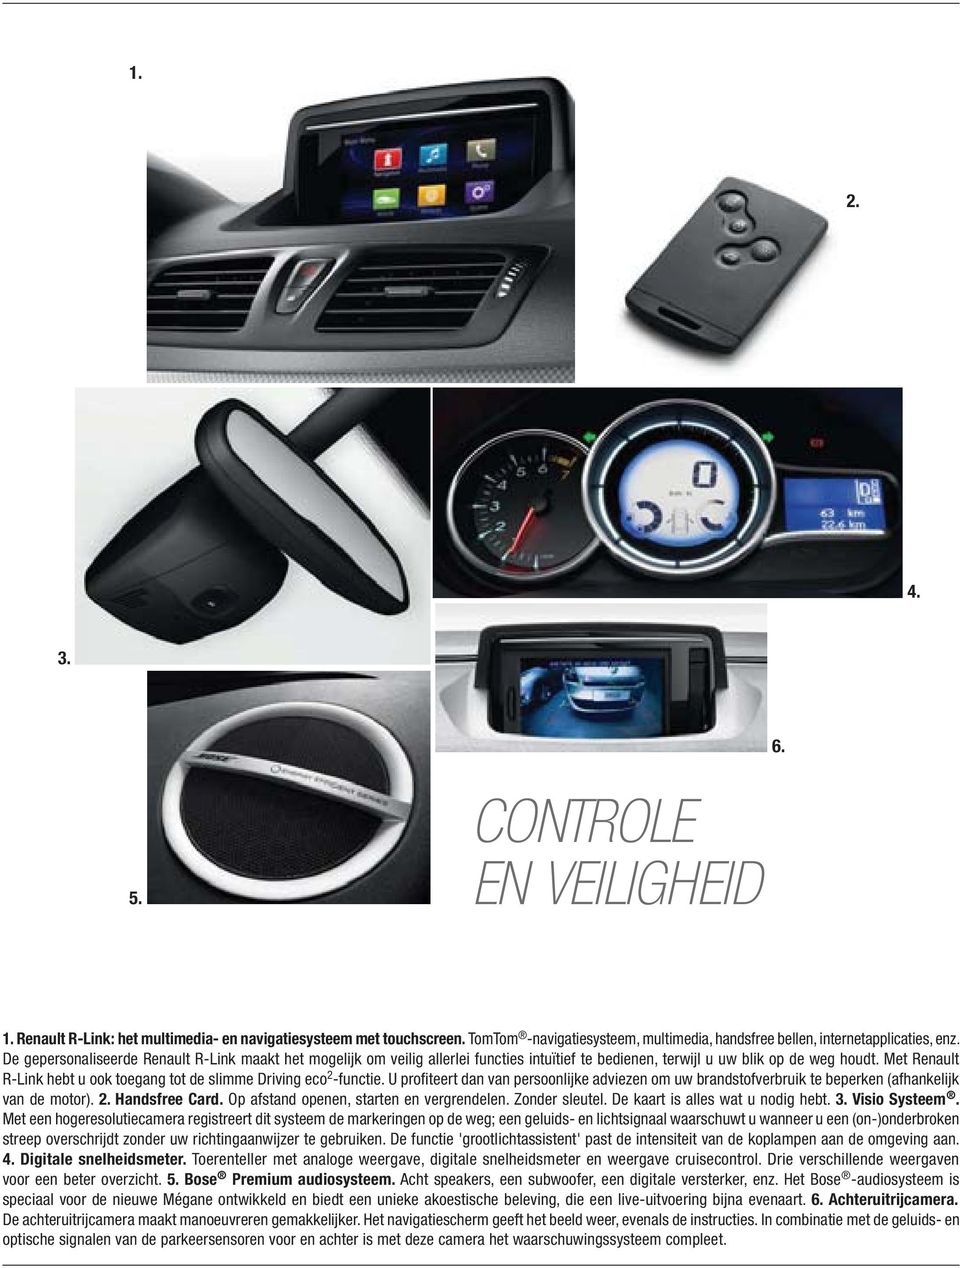 Met Renault R-Link hebt u ook toegang tot de slimme Driving eco 2 -functie. U profiteert dan van persoonlijke adviezen om uw brandstofverbruik te beperken (afhankelijk van de motor). 2. Handsfree Card.